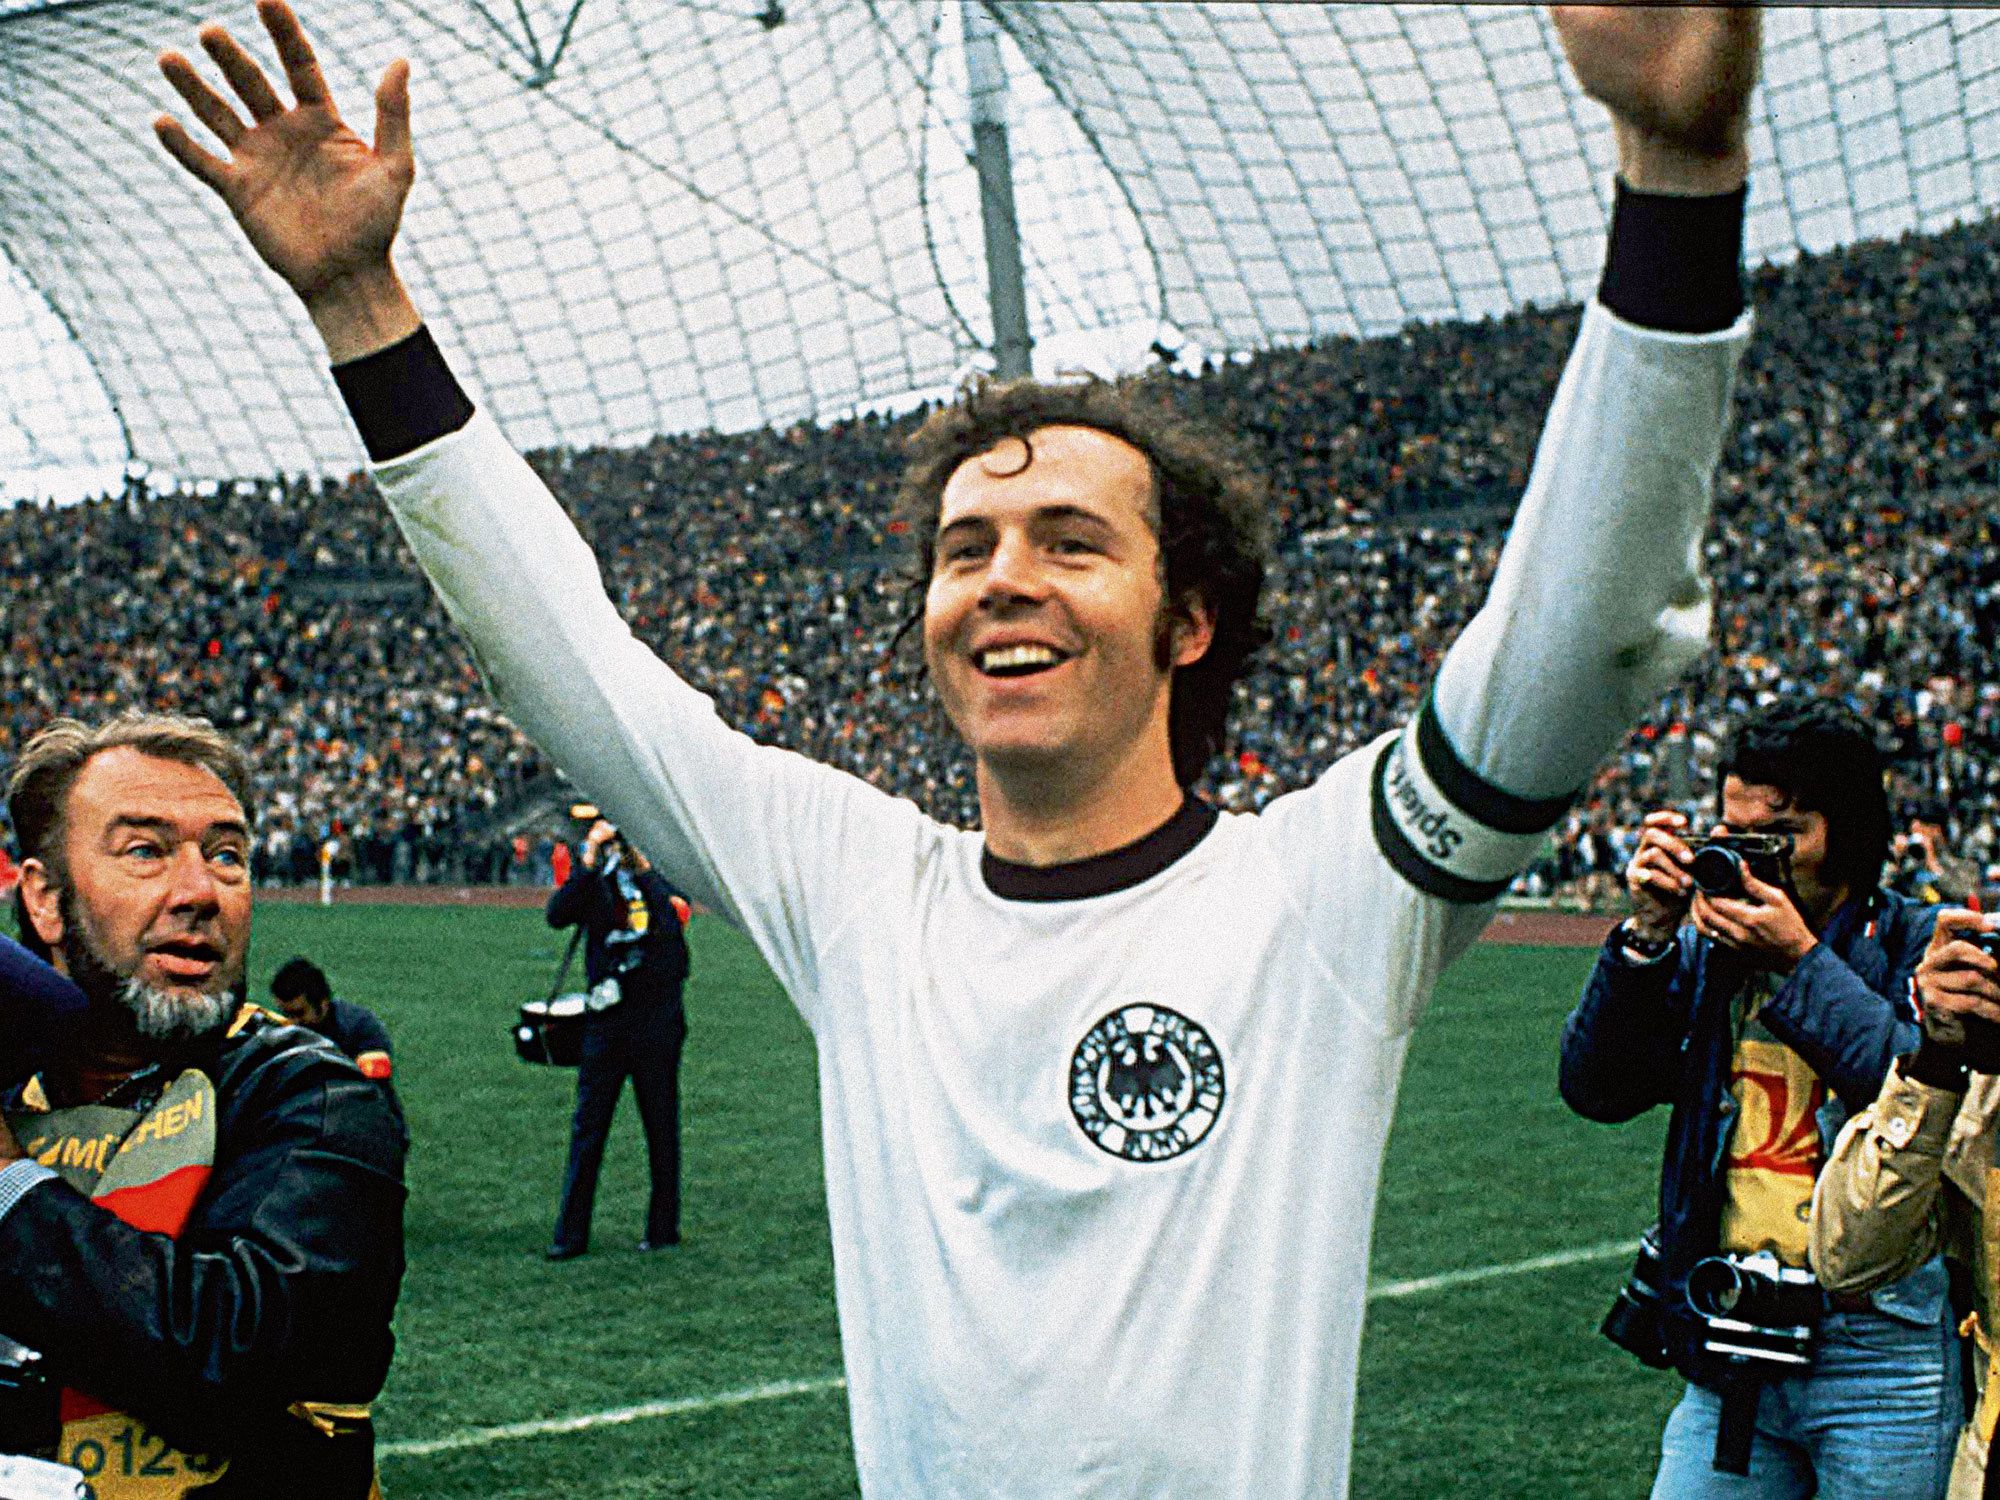 Đôi nét tiêu biểu về huyền thoại bóng đá thế giới Beckenbauer